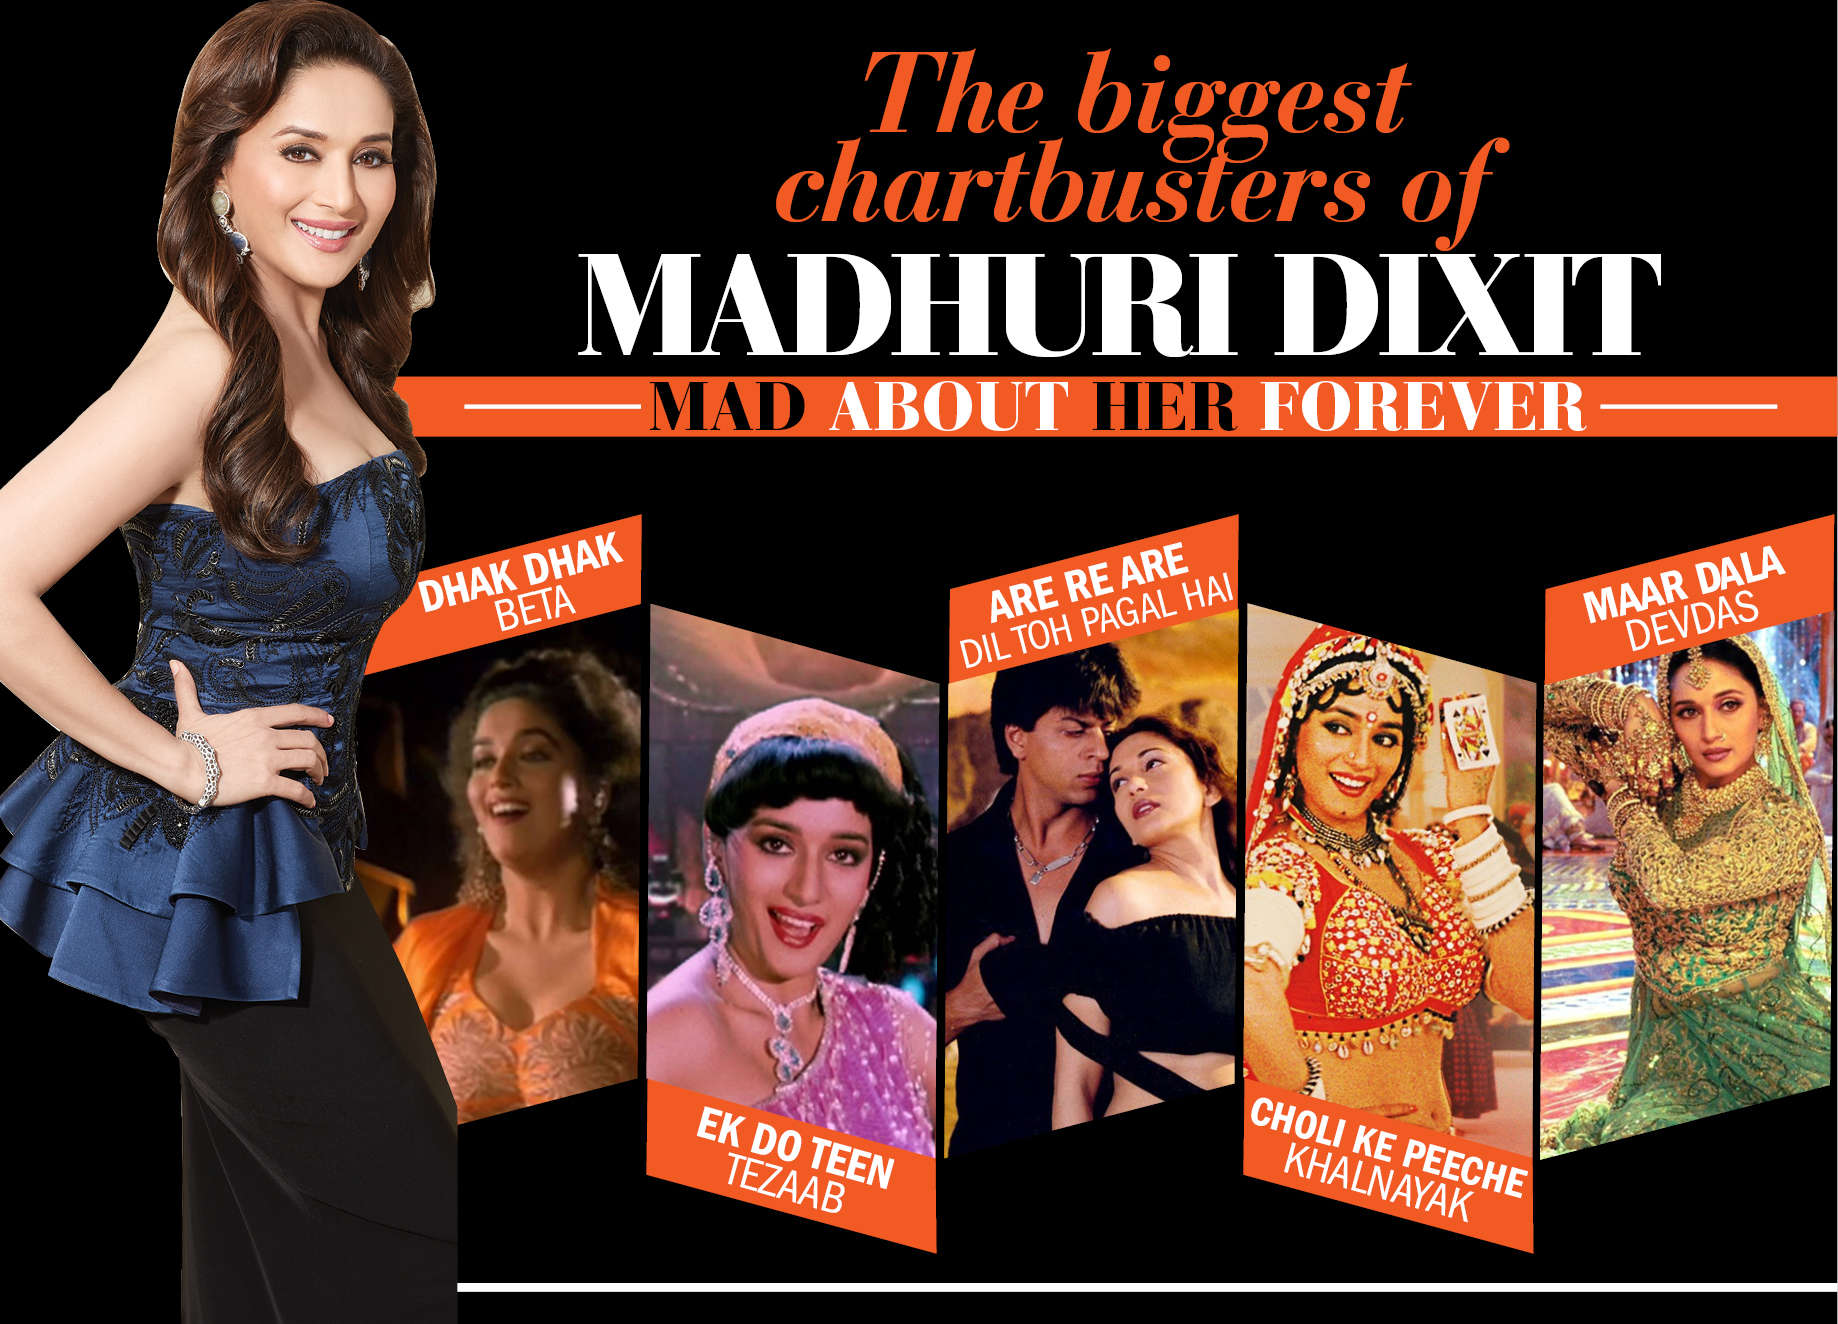 Madhuri Dixit Ki Bilkul Sexy Nangi Karne Wali Video - Birthday special: Madhuri Dixit's 51 most iconic dance numbers |  Filmfare.com